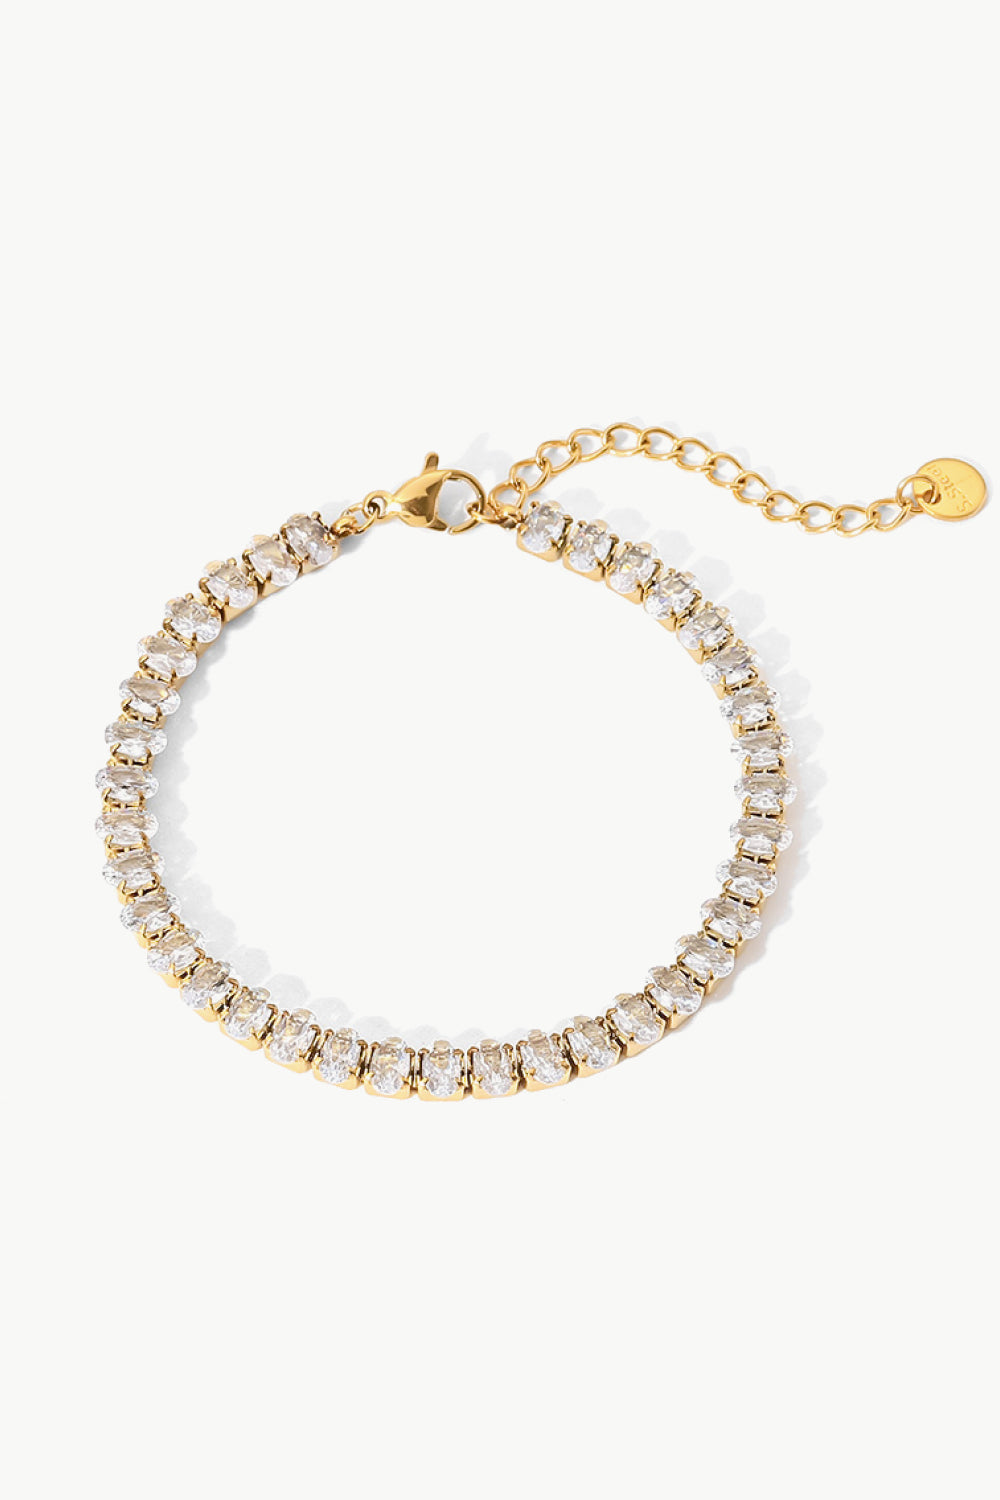 Inlaid Zircon 18K Gold Plated Bracelet - Gold / One Size - Women’s Jewelry - Bracelets - 2 - 2024